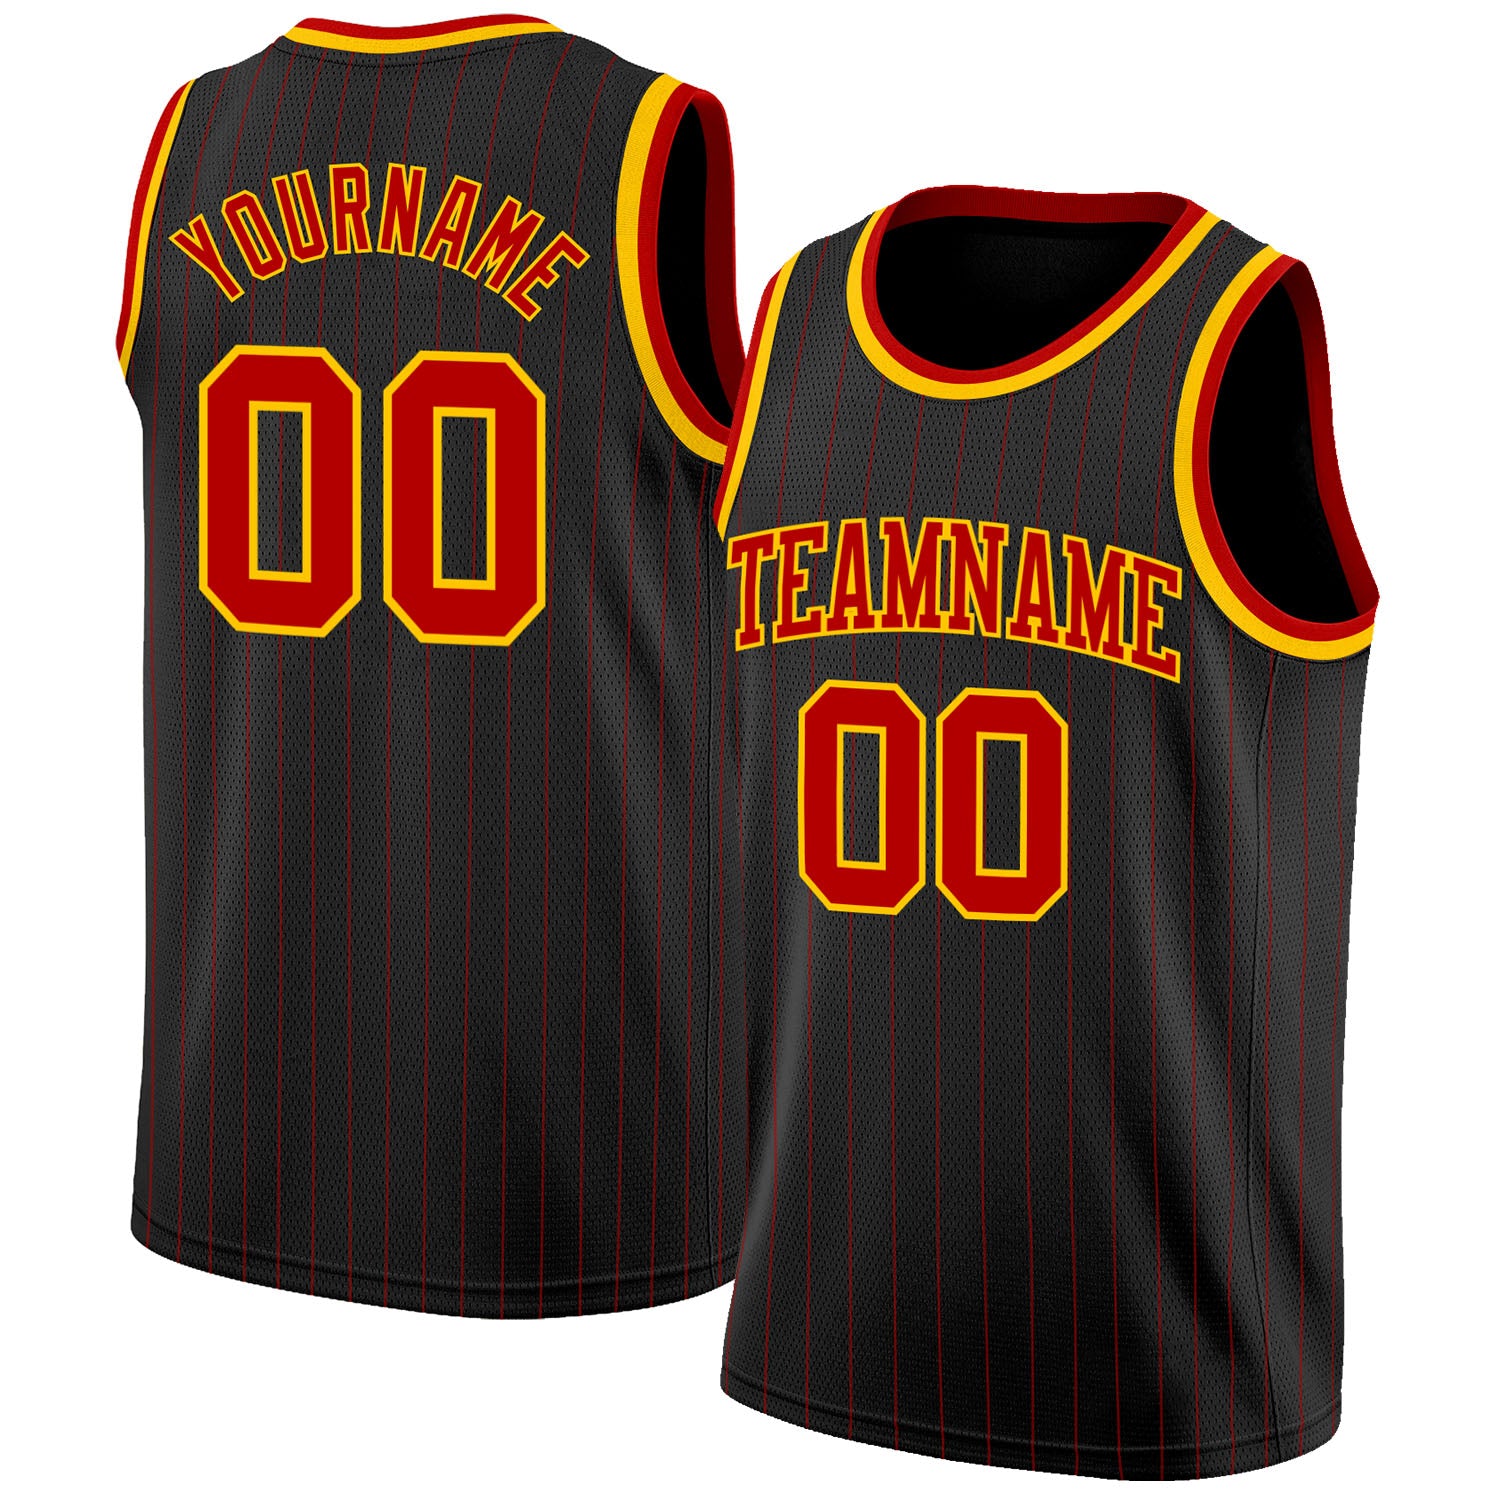 Men Basketball Jersey Design Color Black Stripes Basketball Team Wear